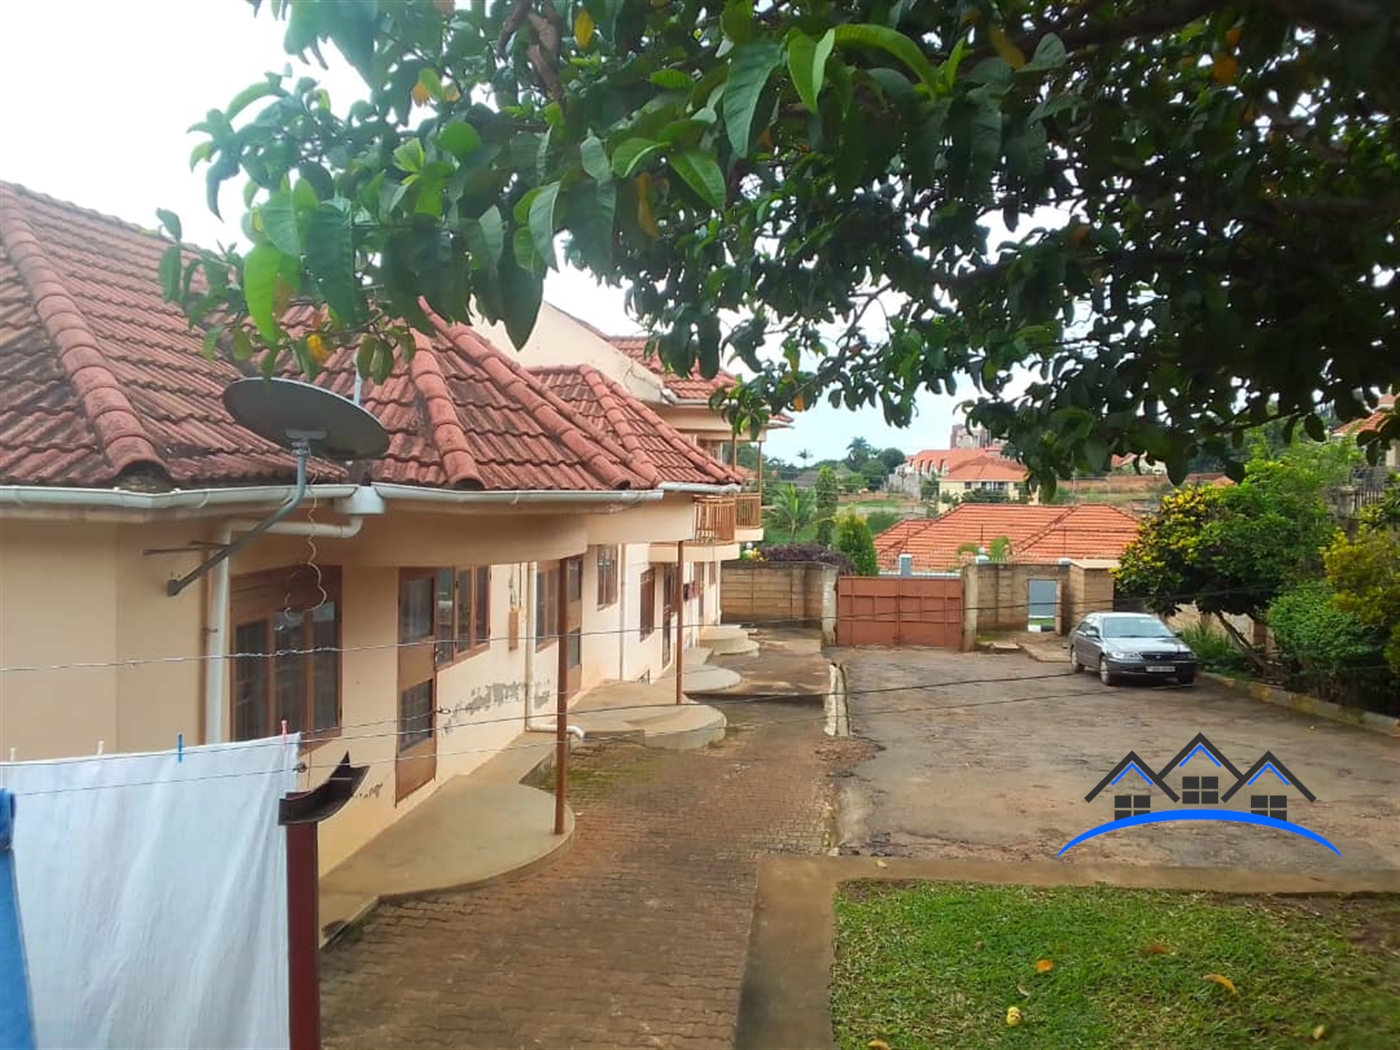 Rental units for sale in Kisosonkole Kampala